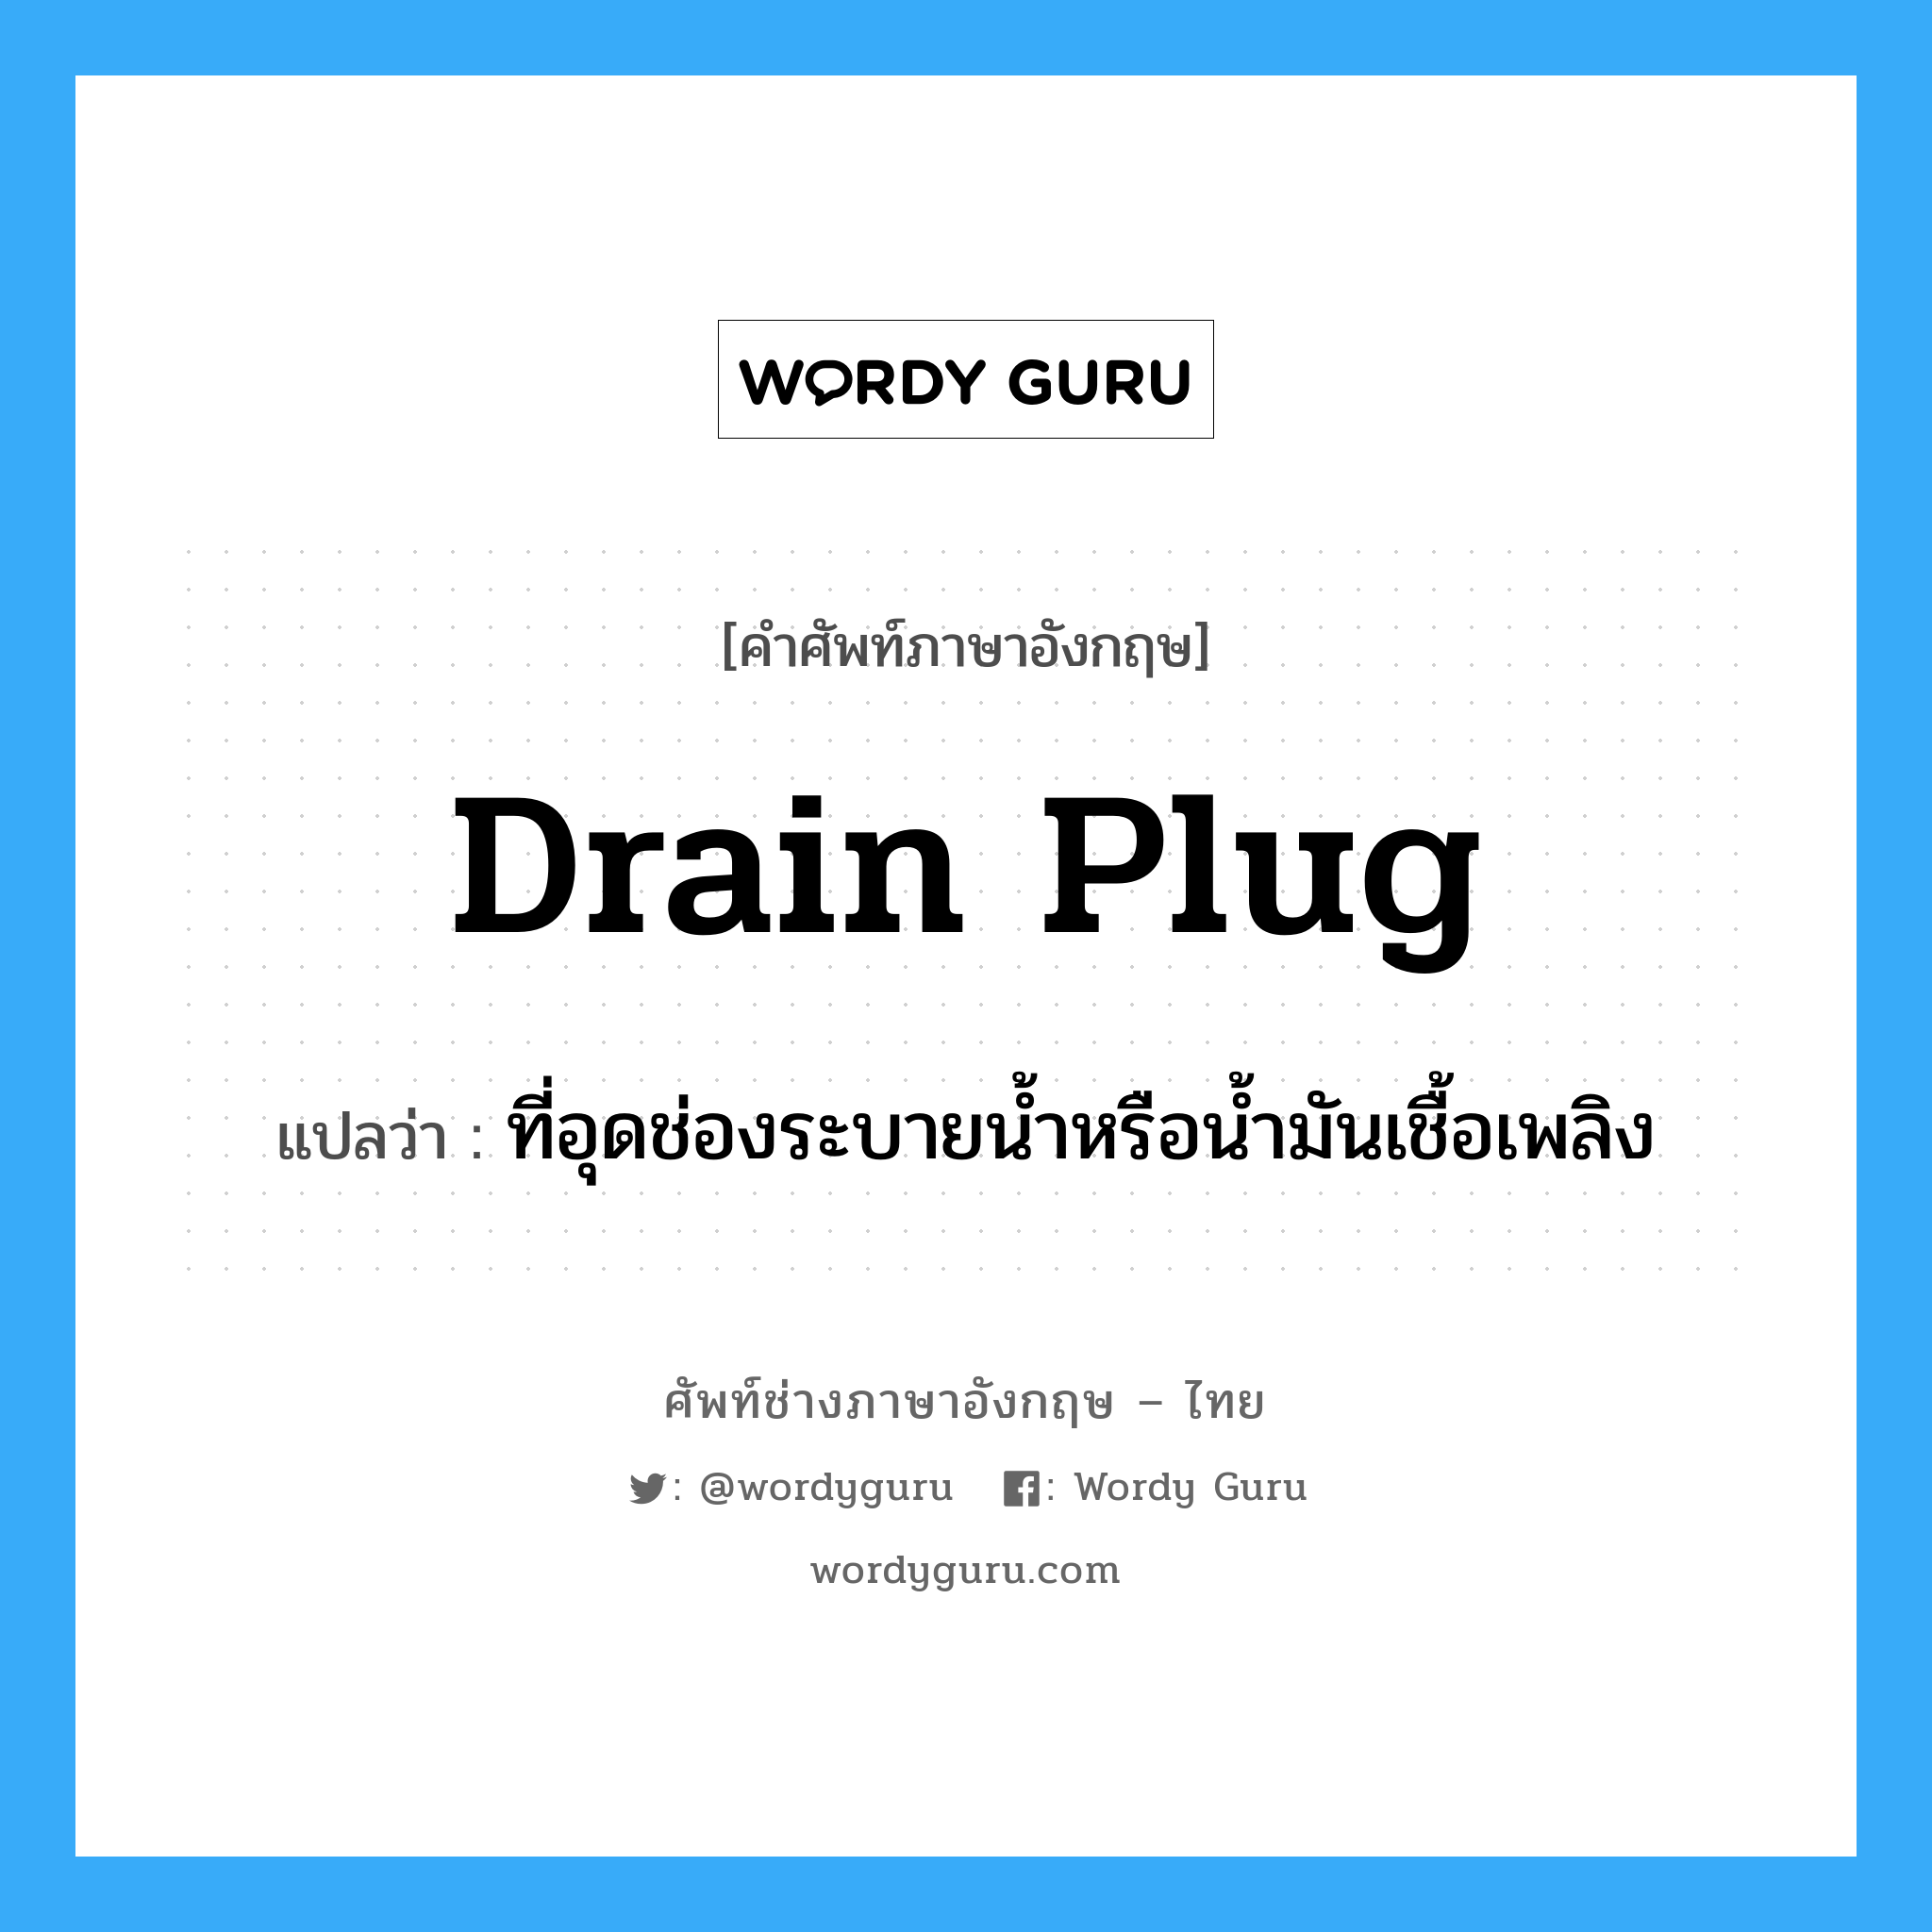 drain plug แปลว่า?, คำศัพท์ช่างภาษาอังกฤษ - ไทย drain plug คำศัพท์ภาษาอังกฤษ drain plug แปลว่า ที่อุดช่องระบายน้ำหรือน้ำมันเชื้อเพลิง